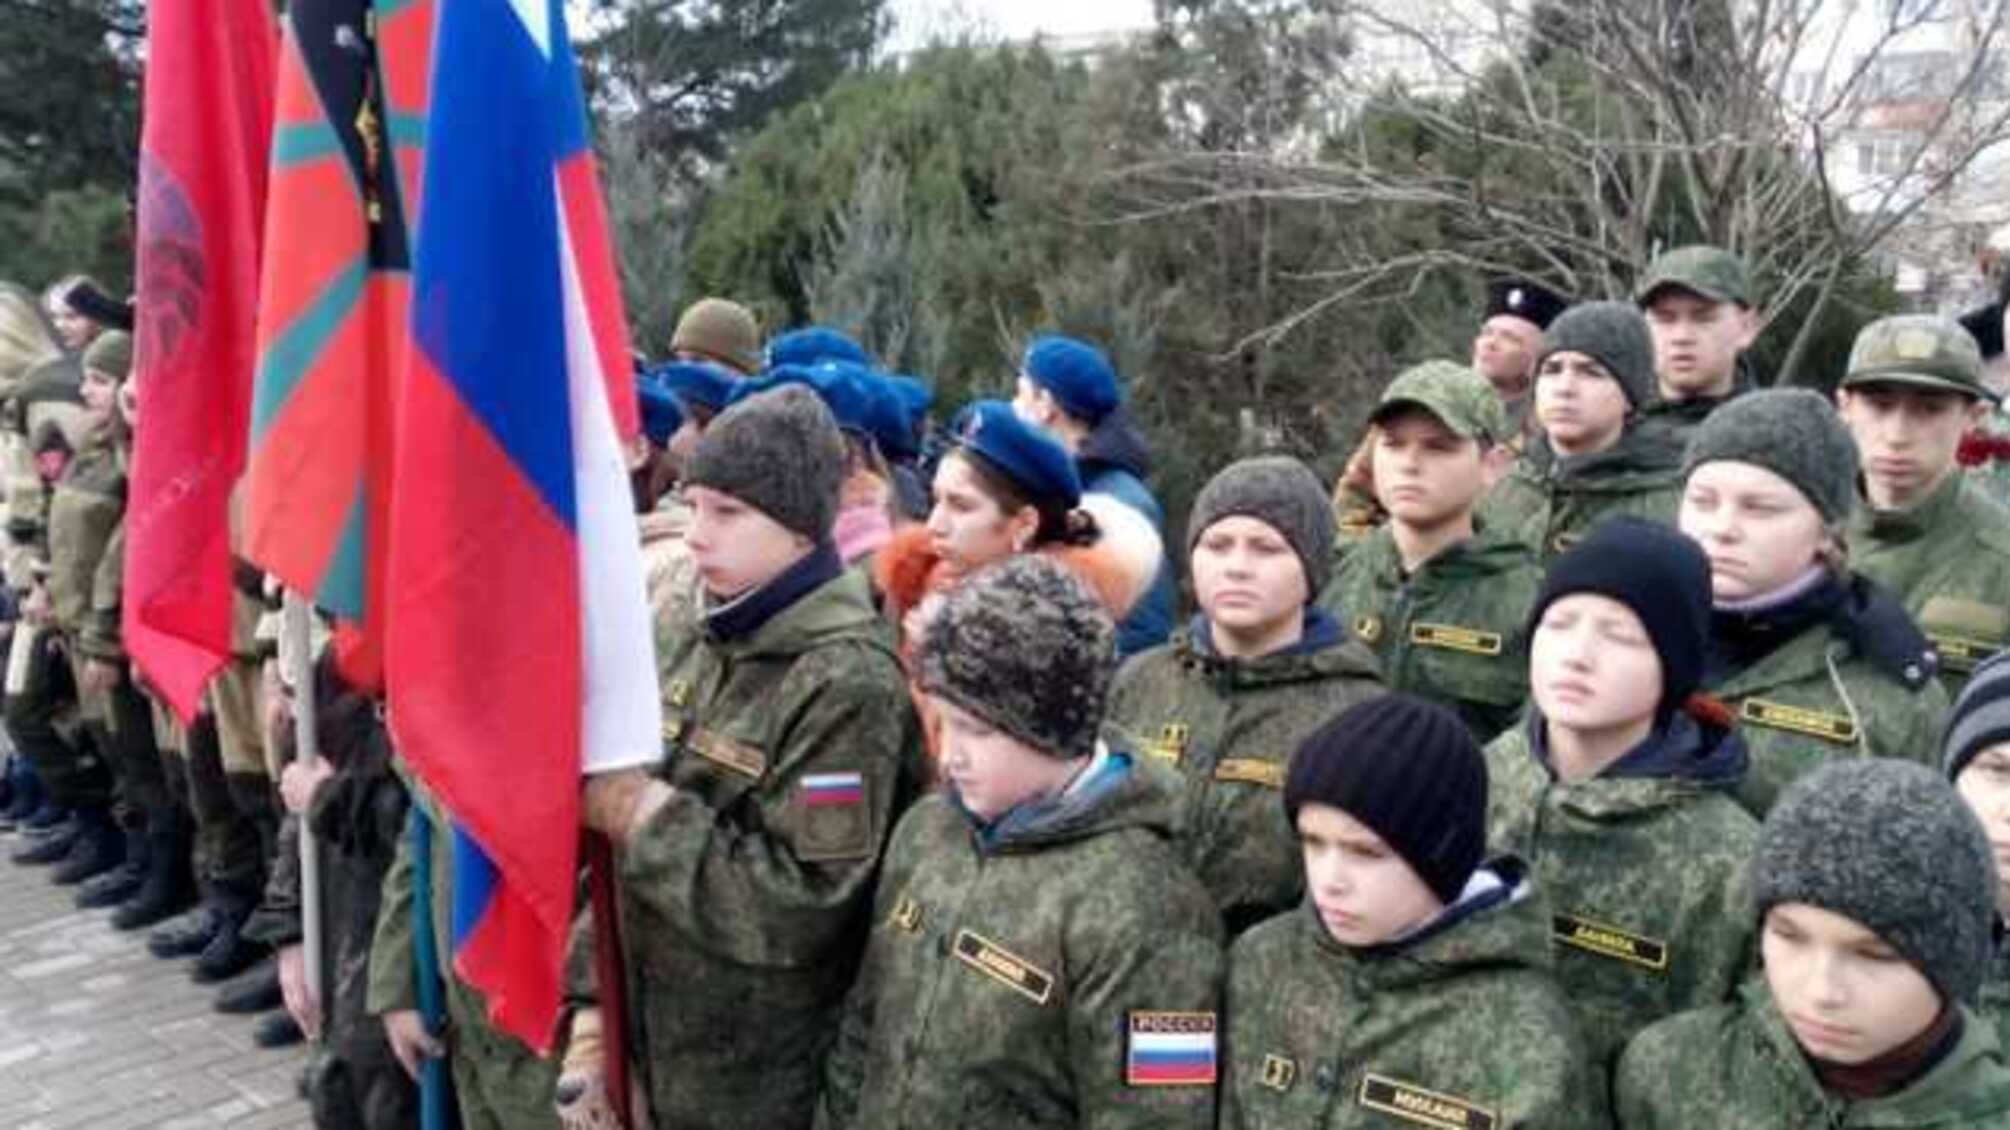 Оккупанты устроили детям праздник в военной форме: фото 'зомби-митинга' в Крыму